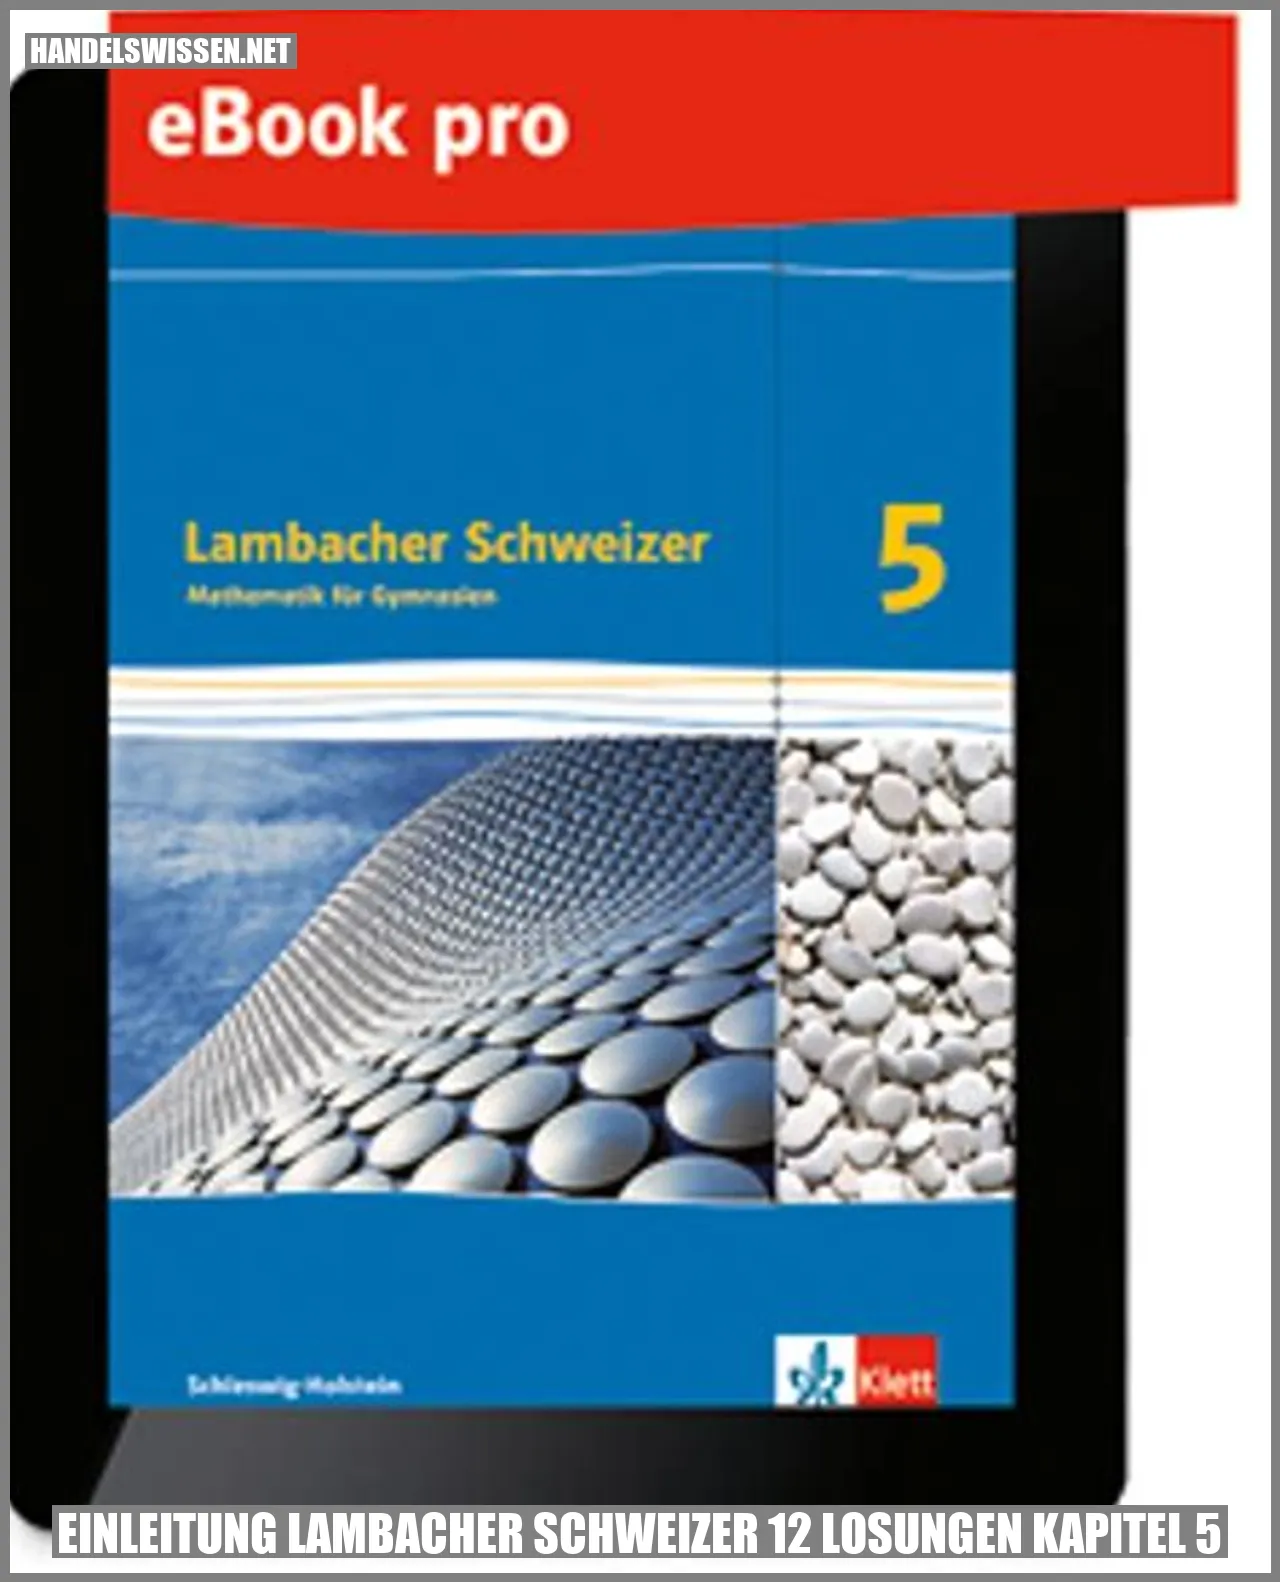 Einleitung Lambacher Schweizer 12 Lösungen Kapitel 5